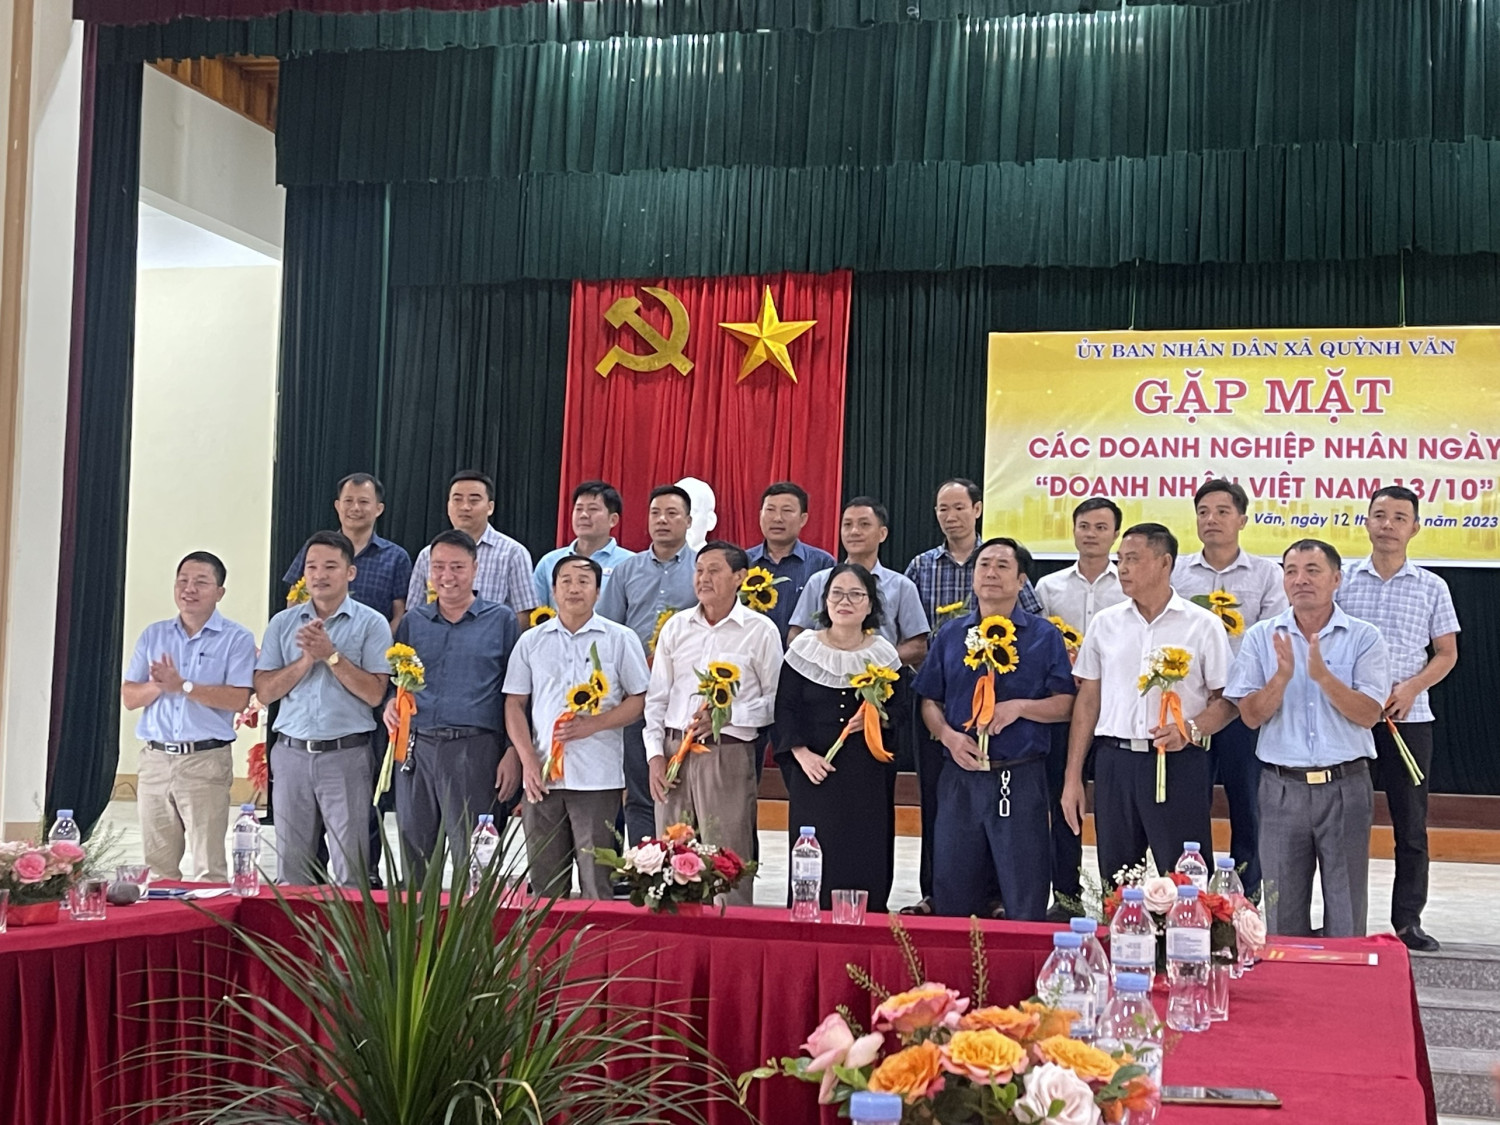 Lãnh đạo xã Quỳnh Văn tặng hoa chúc mừng các doanh nghiệp nhân dịp kỷ niệm 19 năm ngày Doanh nhân Việt Nam